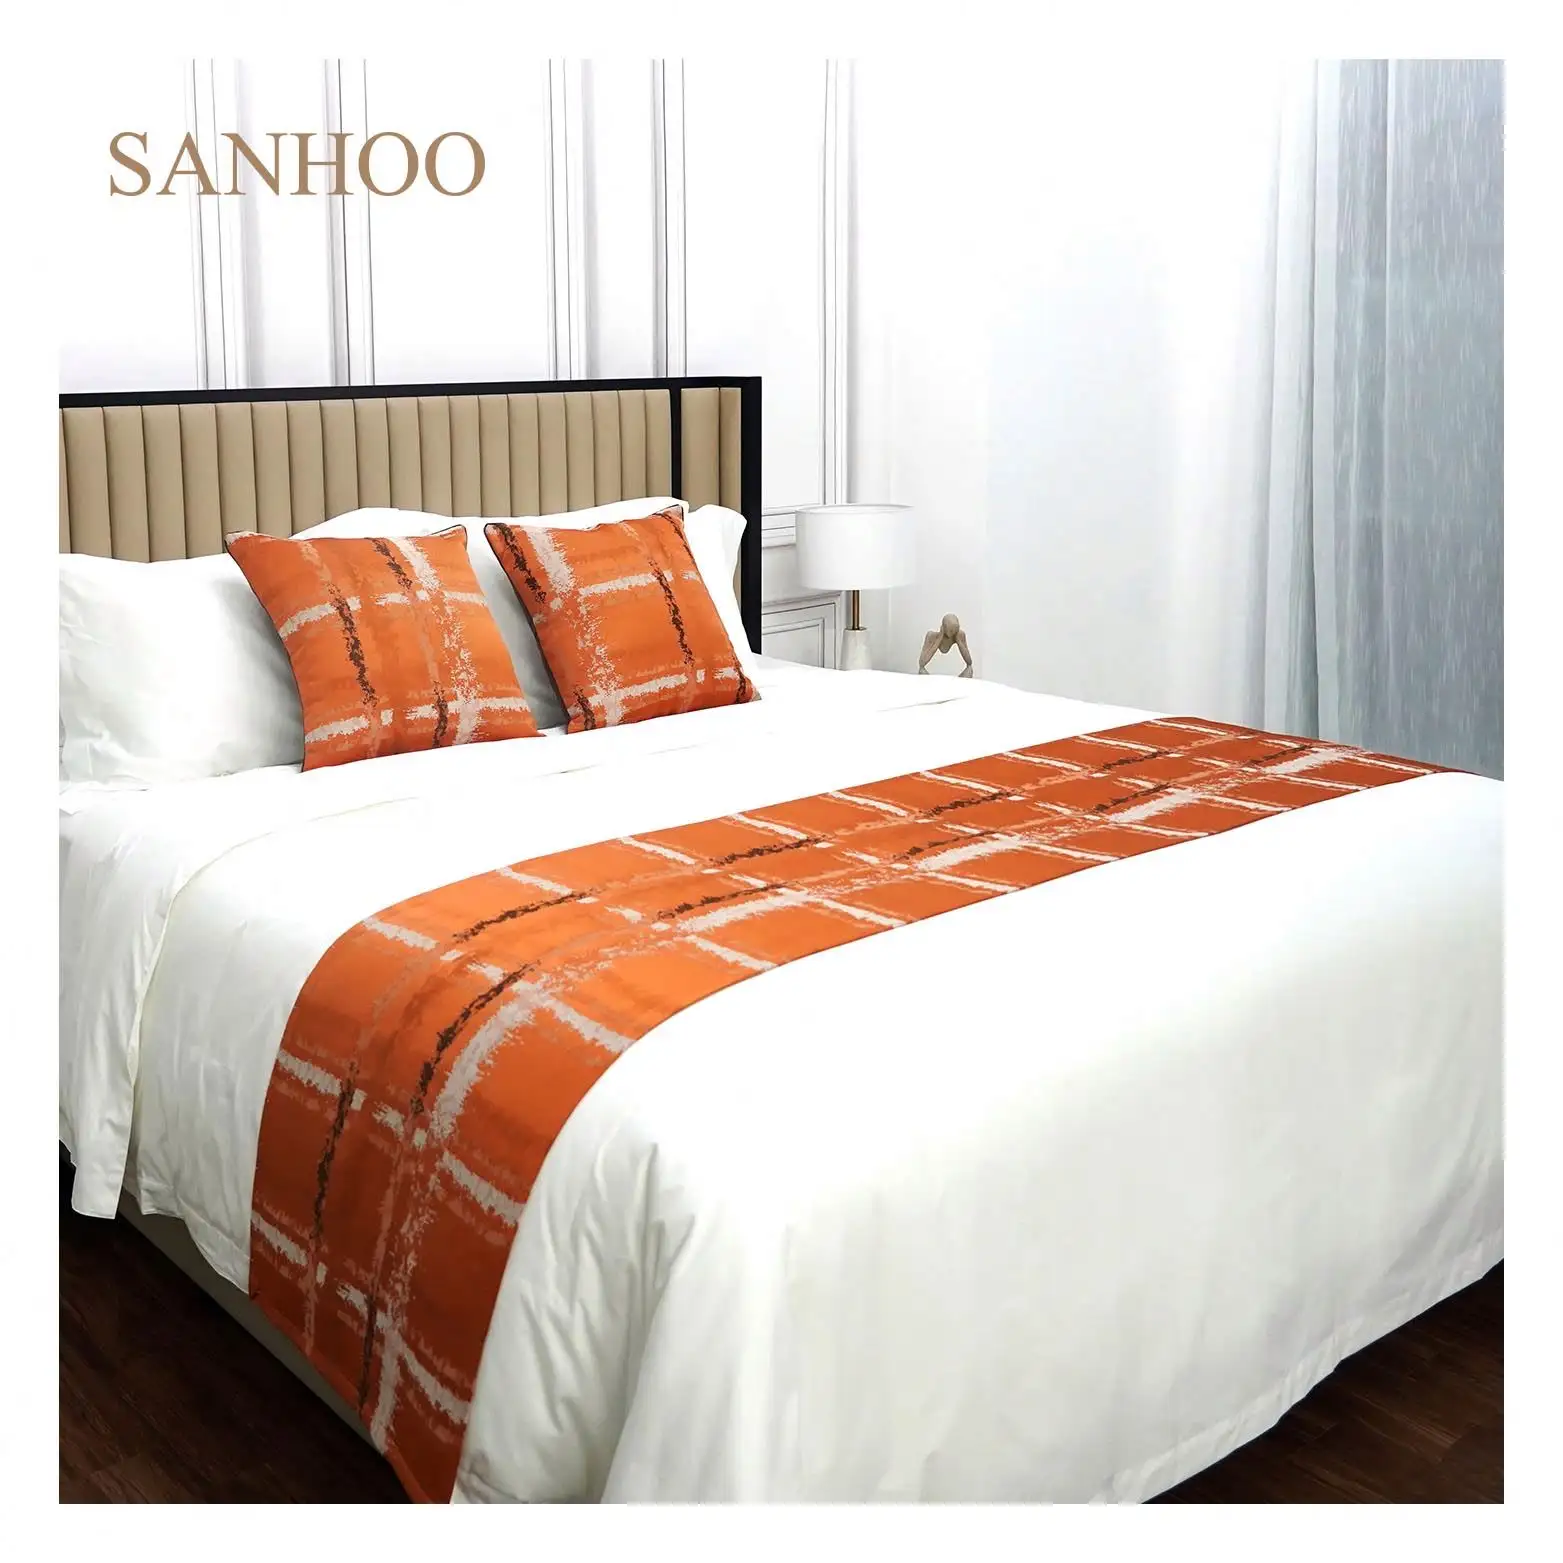 SANHOO ชุดเครื่องนอนผ้าฝ้าย100สำหรับโรงแรม,เตียงคิงไซส์ชุดเครื่องนอนของโรงแรมขนาดคิงไซส์ผ้าฝ้าย100% 1800Tc